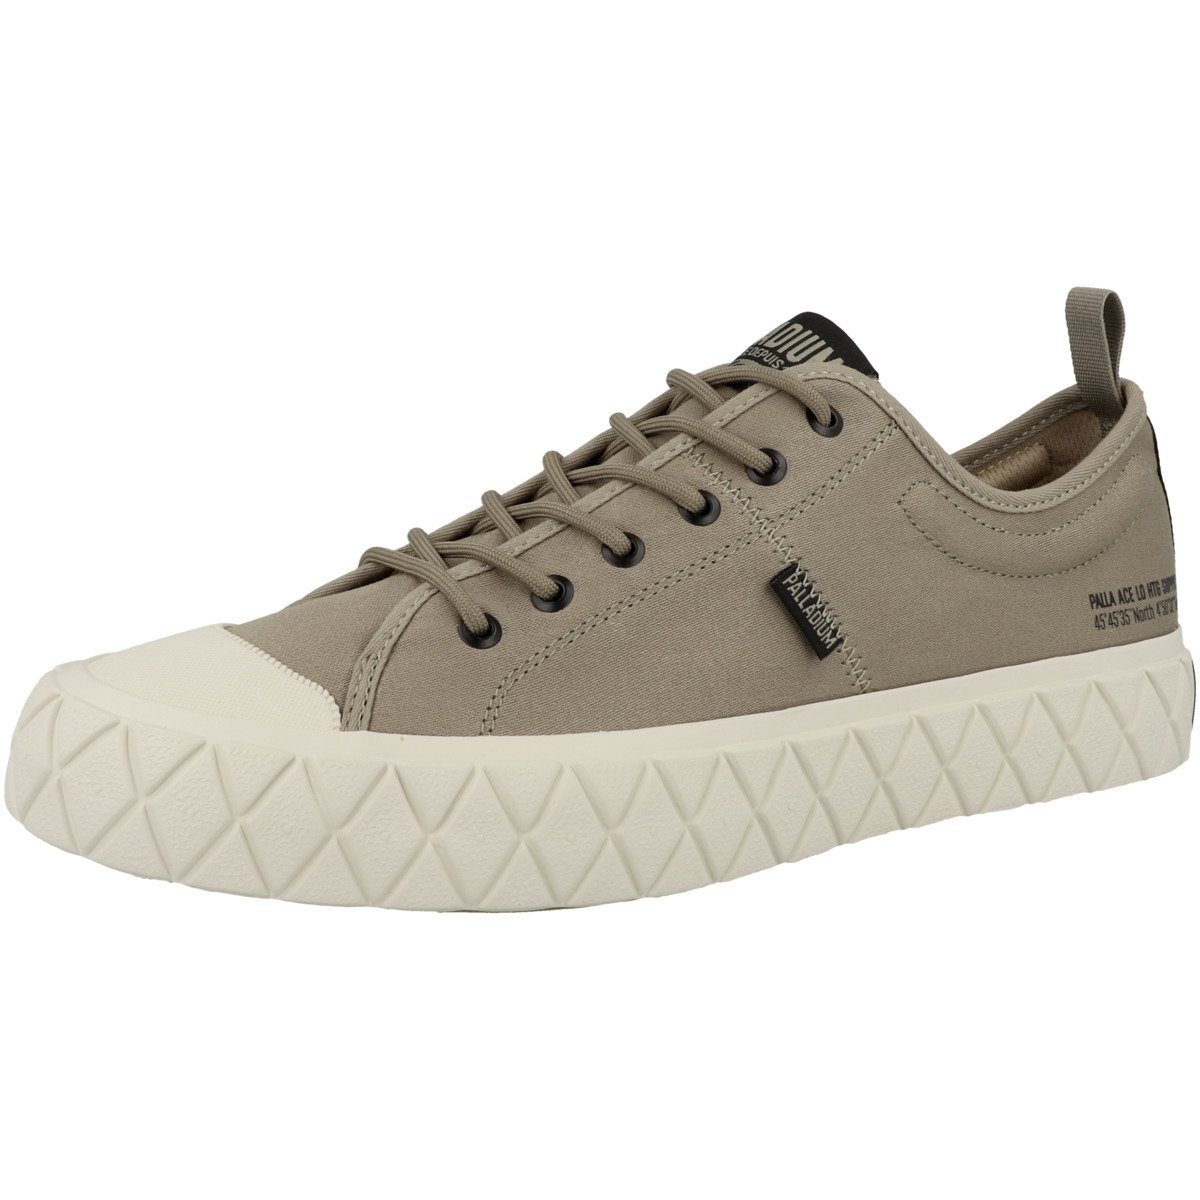 Lo Unisex Supply Sneaker Ace Palladium hellbraun Erwachsene Palla